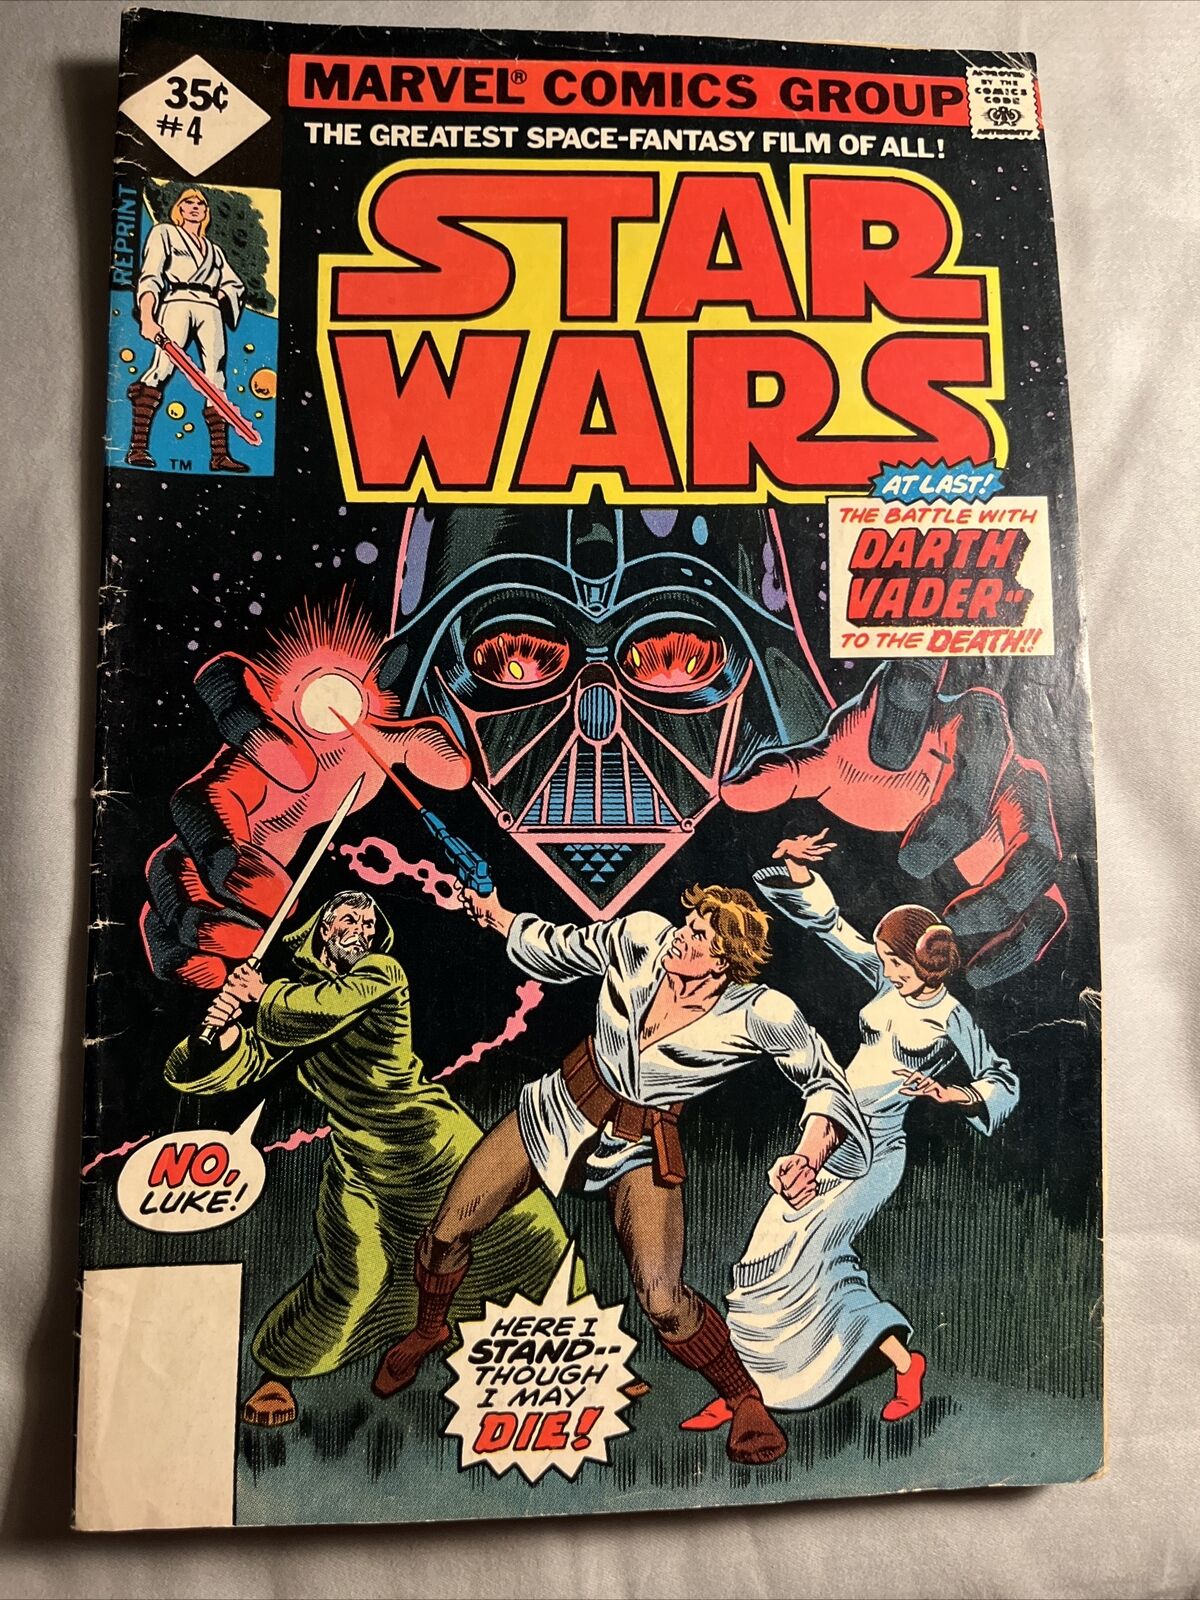 Star Wars Marvel Comic Book #4 October 1977 Vol 1, No 4